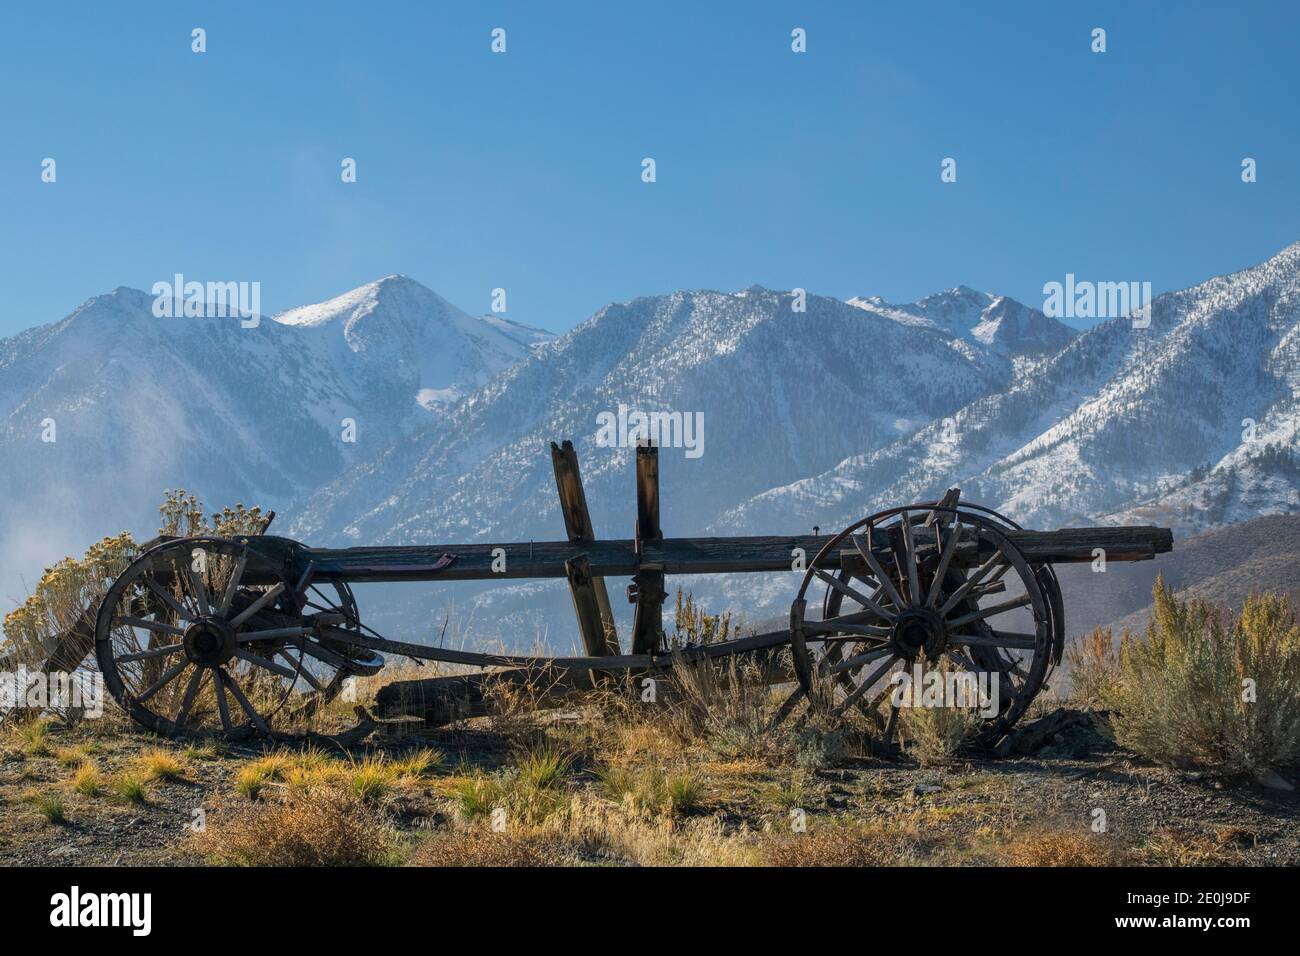 Un vieux wagon tiré par des NOx retourne lentement à la poussière sur fond des montagnes de la haute Sierra Nevada. Pourquoi le wagon a-t-il été abandonné ? Banque D'Images